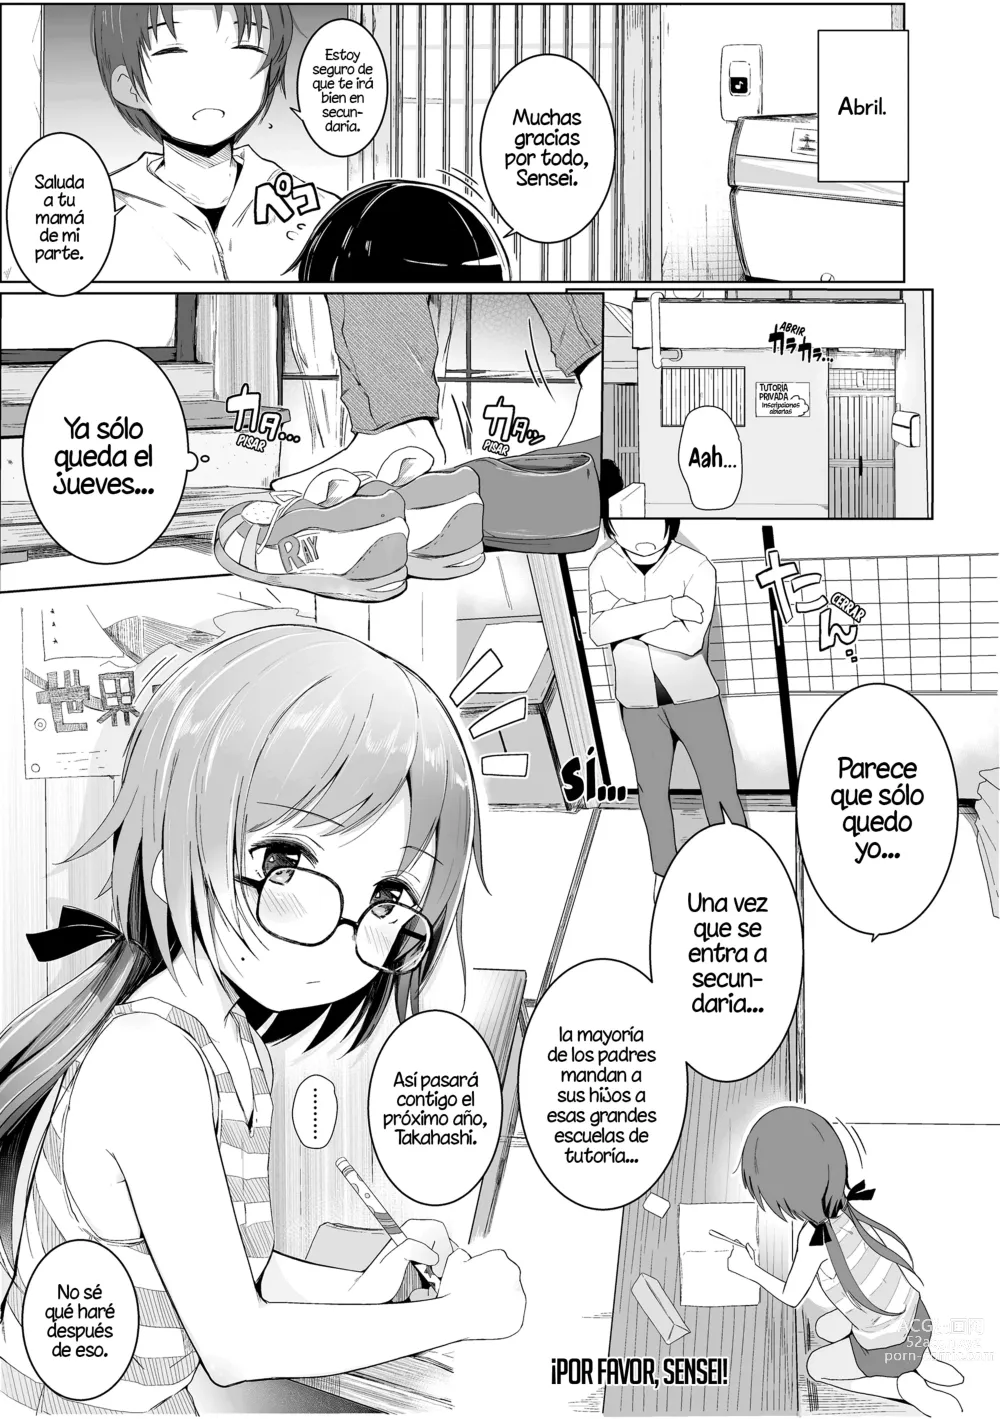 Page 1 of manga ¡Por favor, Sensei!